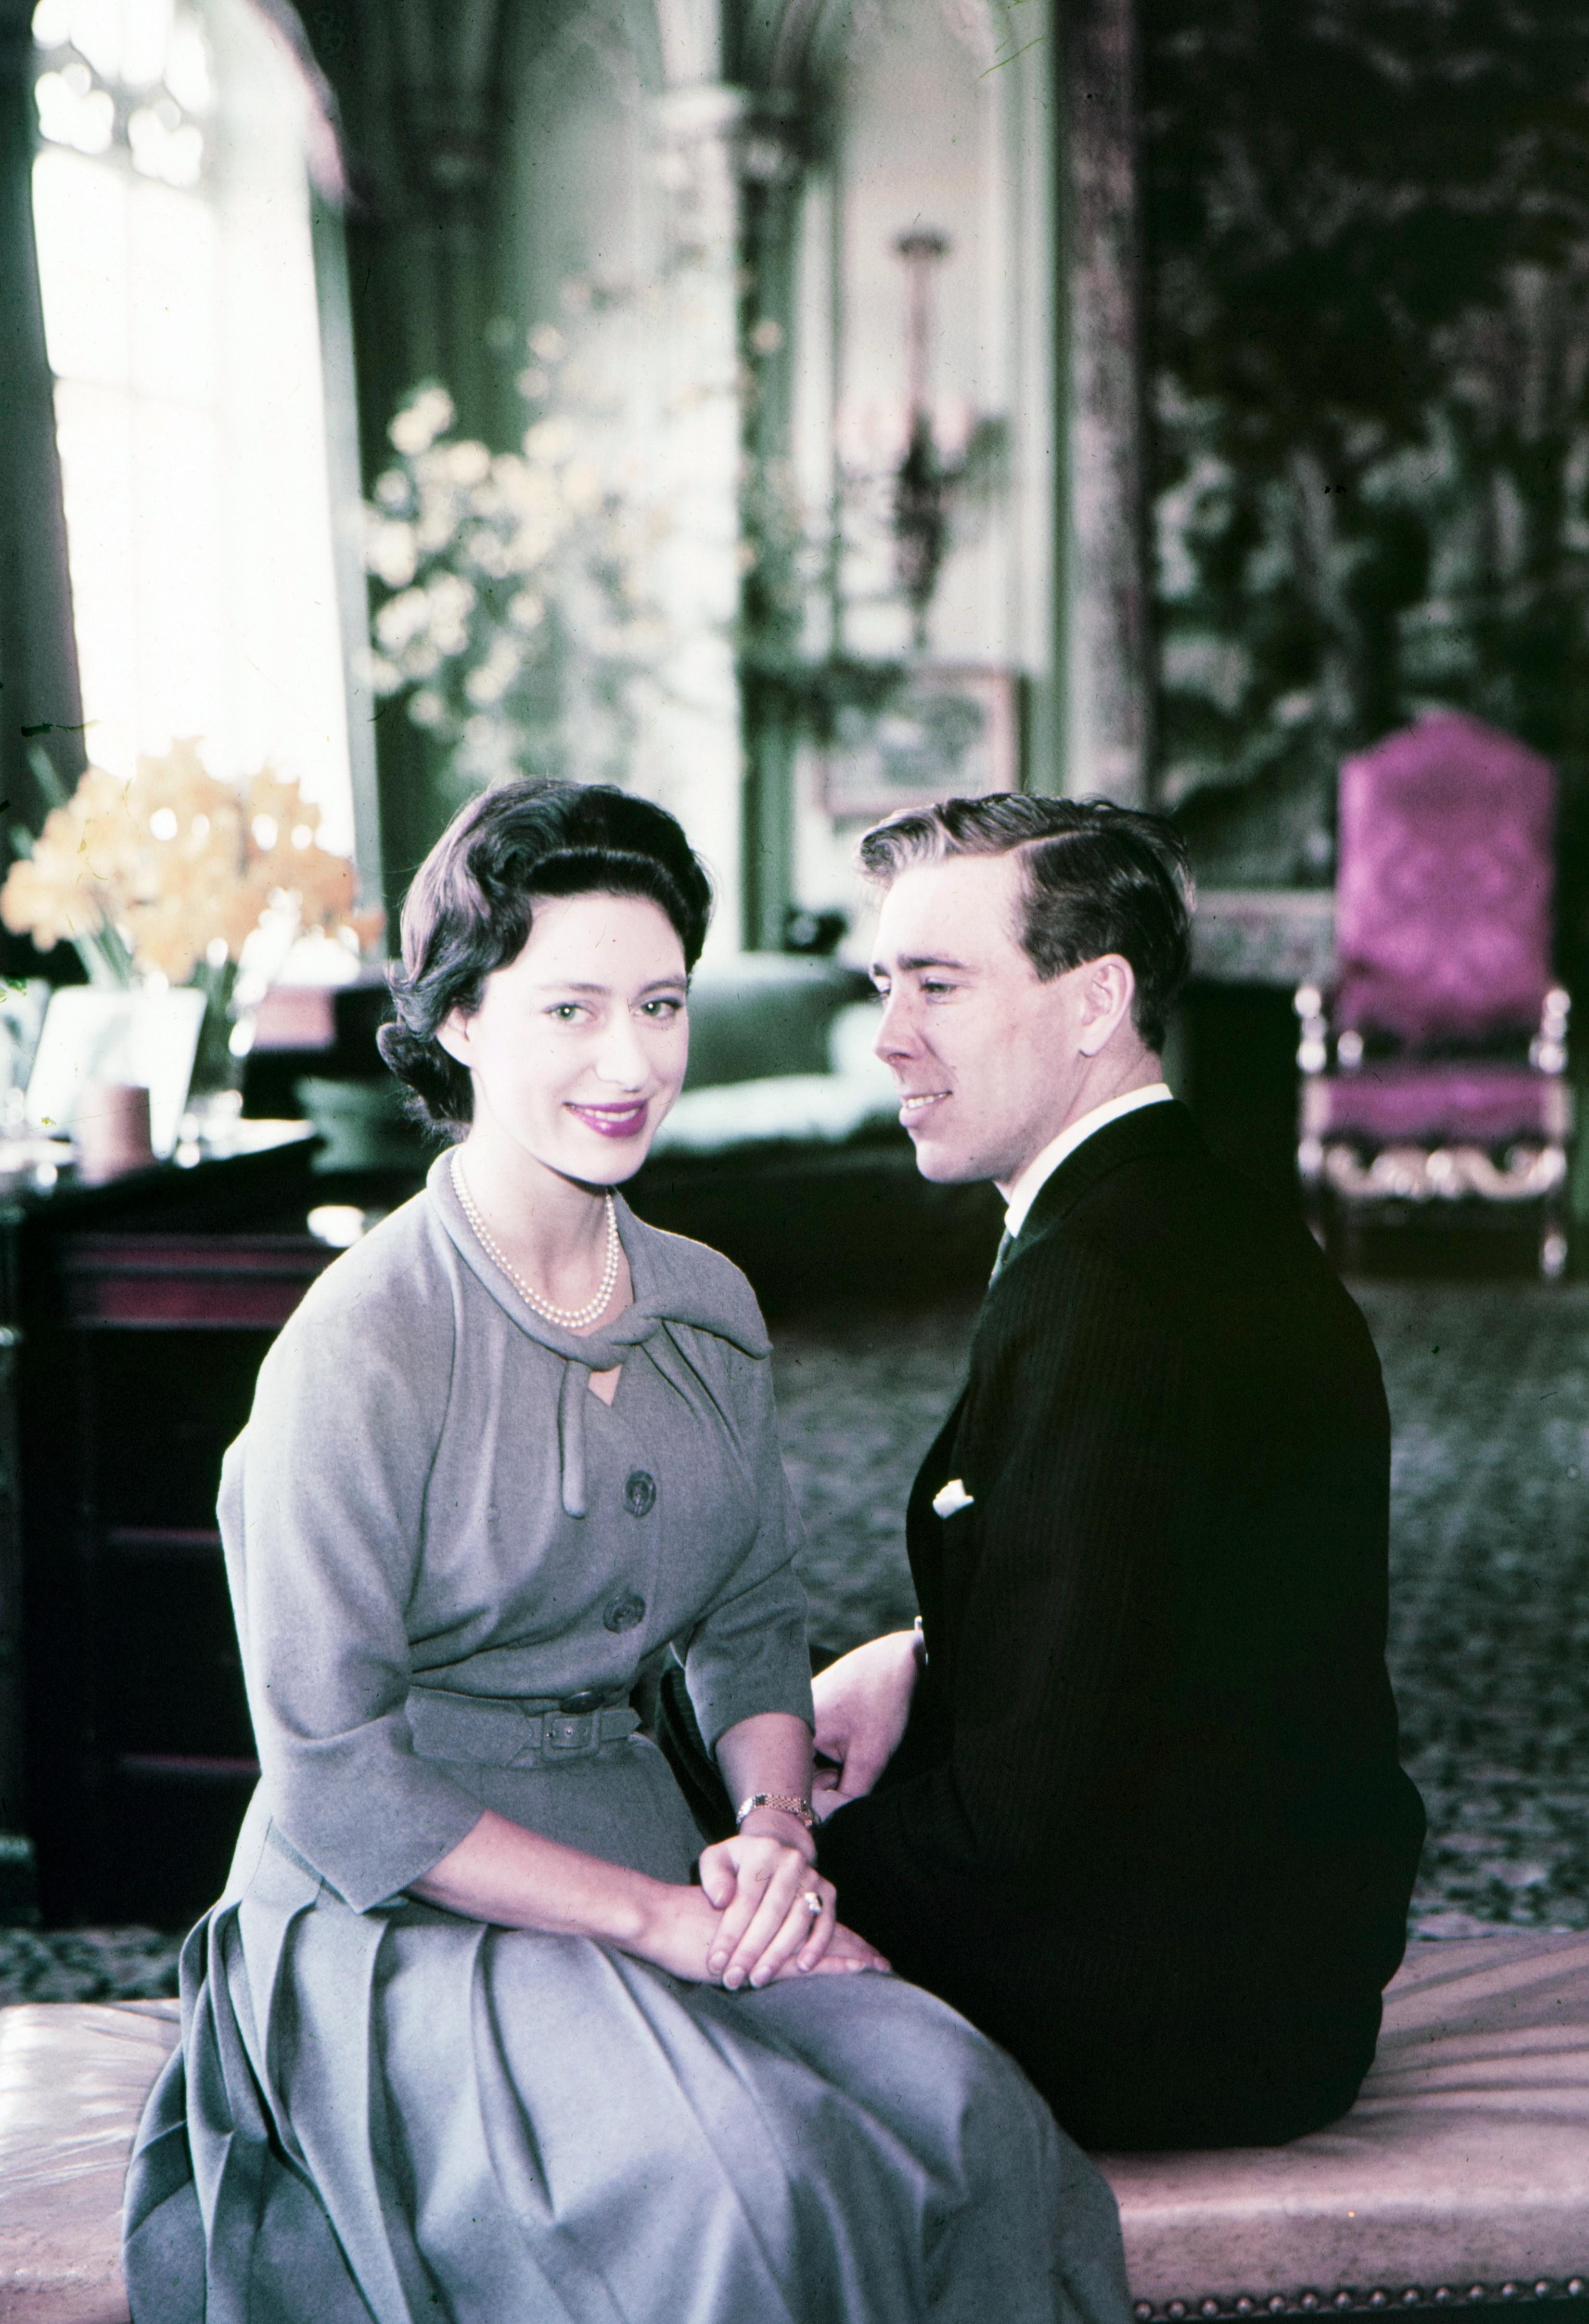   Le photographe Lord Snowdon a été marié à la princesse Margaret pendant 18 ans